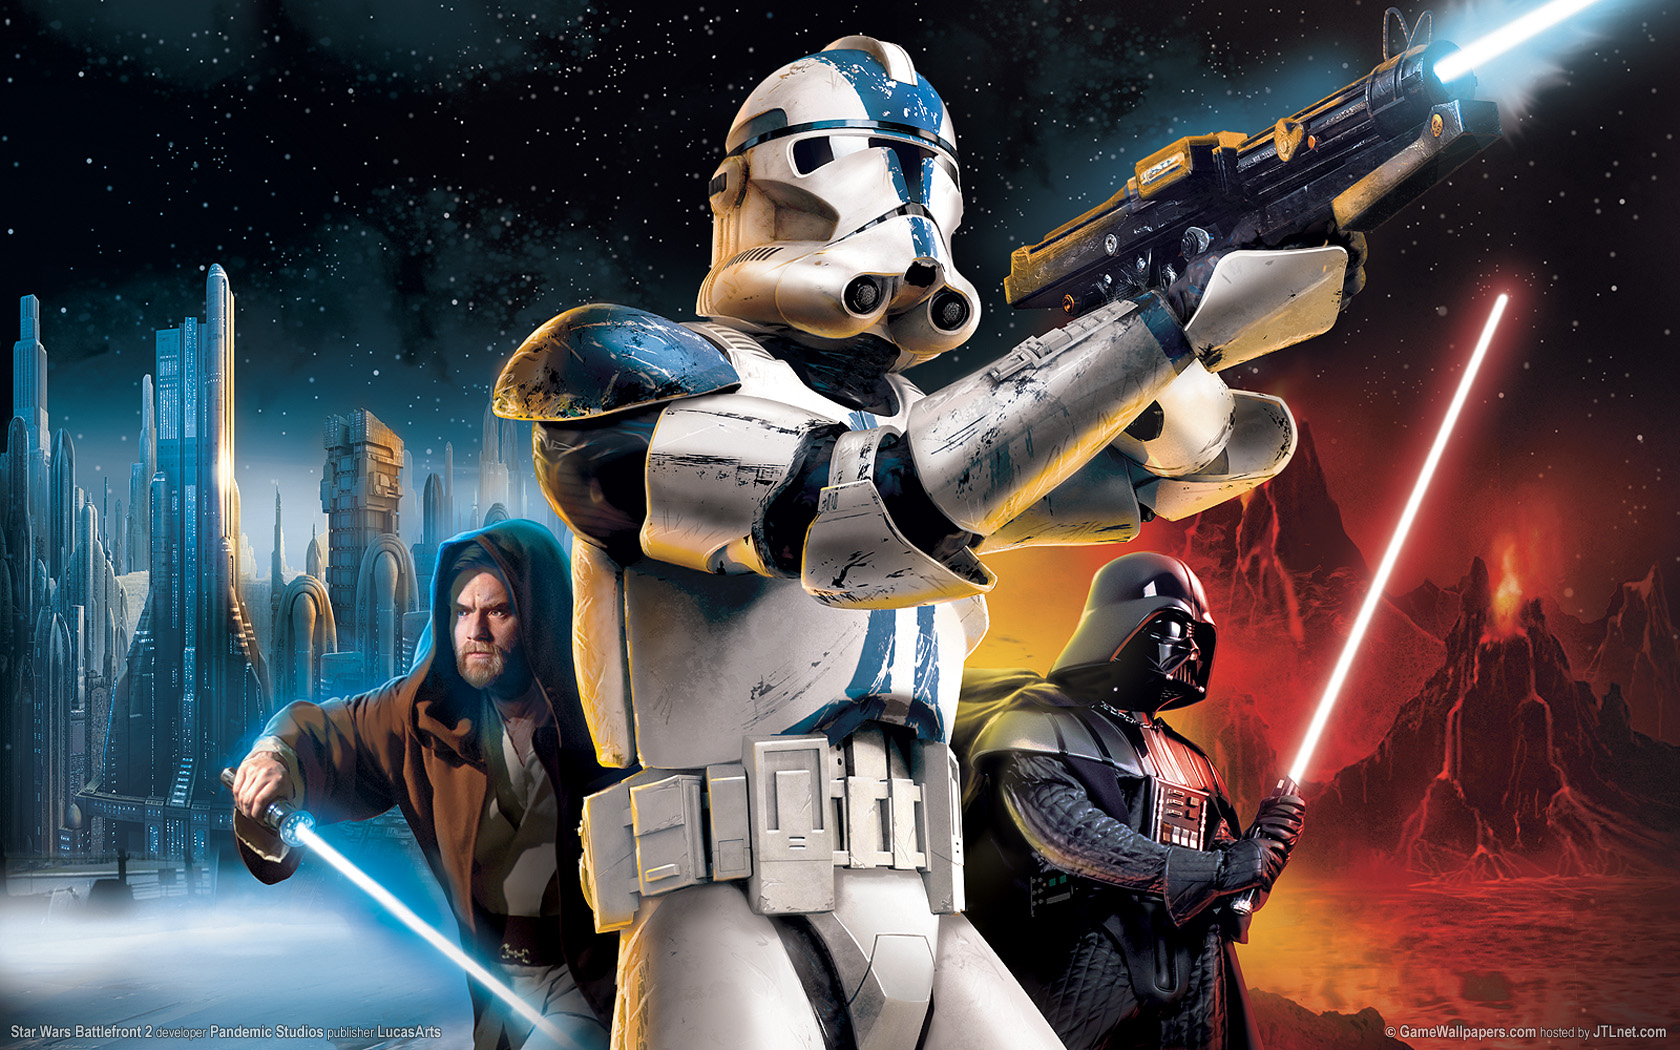 Free download Star Wars Battlefront 2 wallpapers Star Wars Battlefront